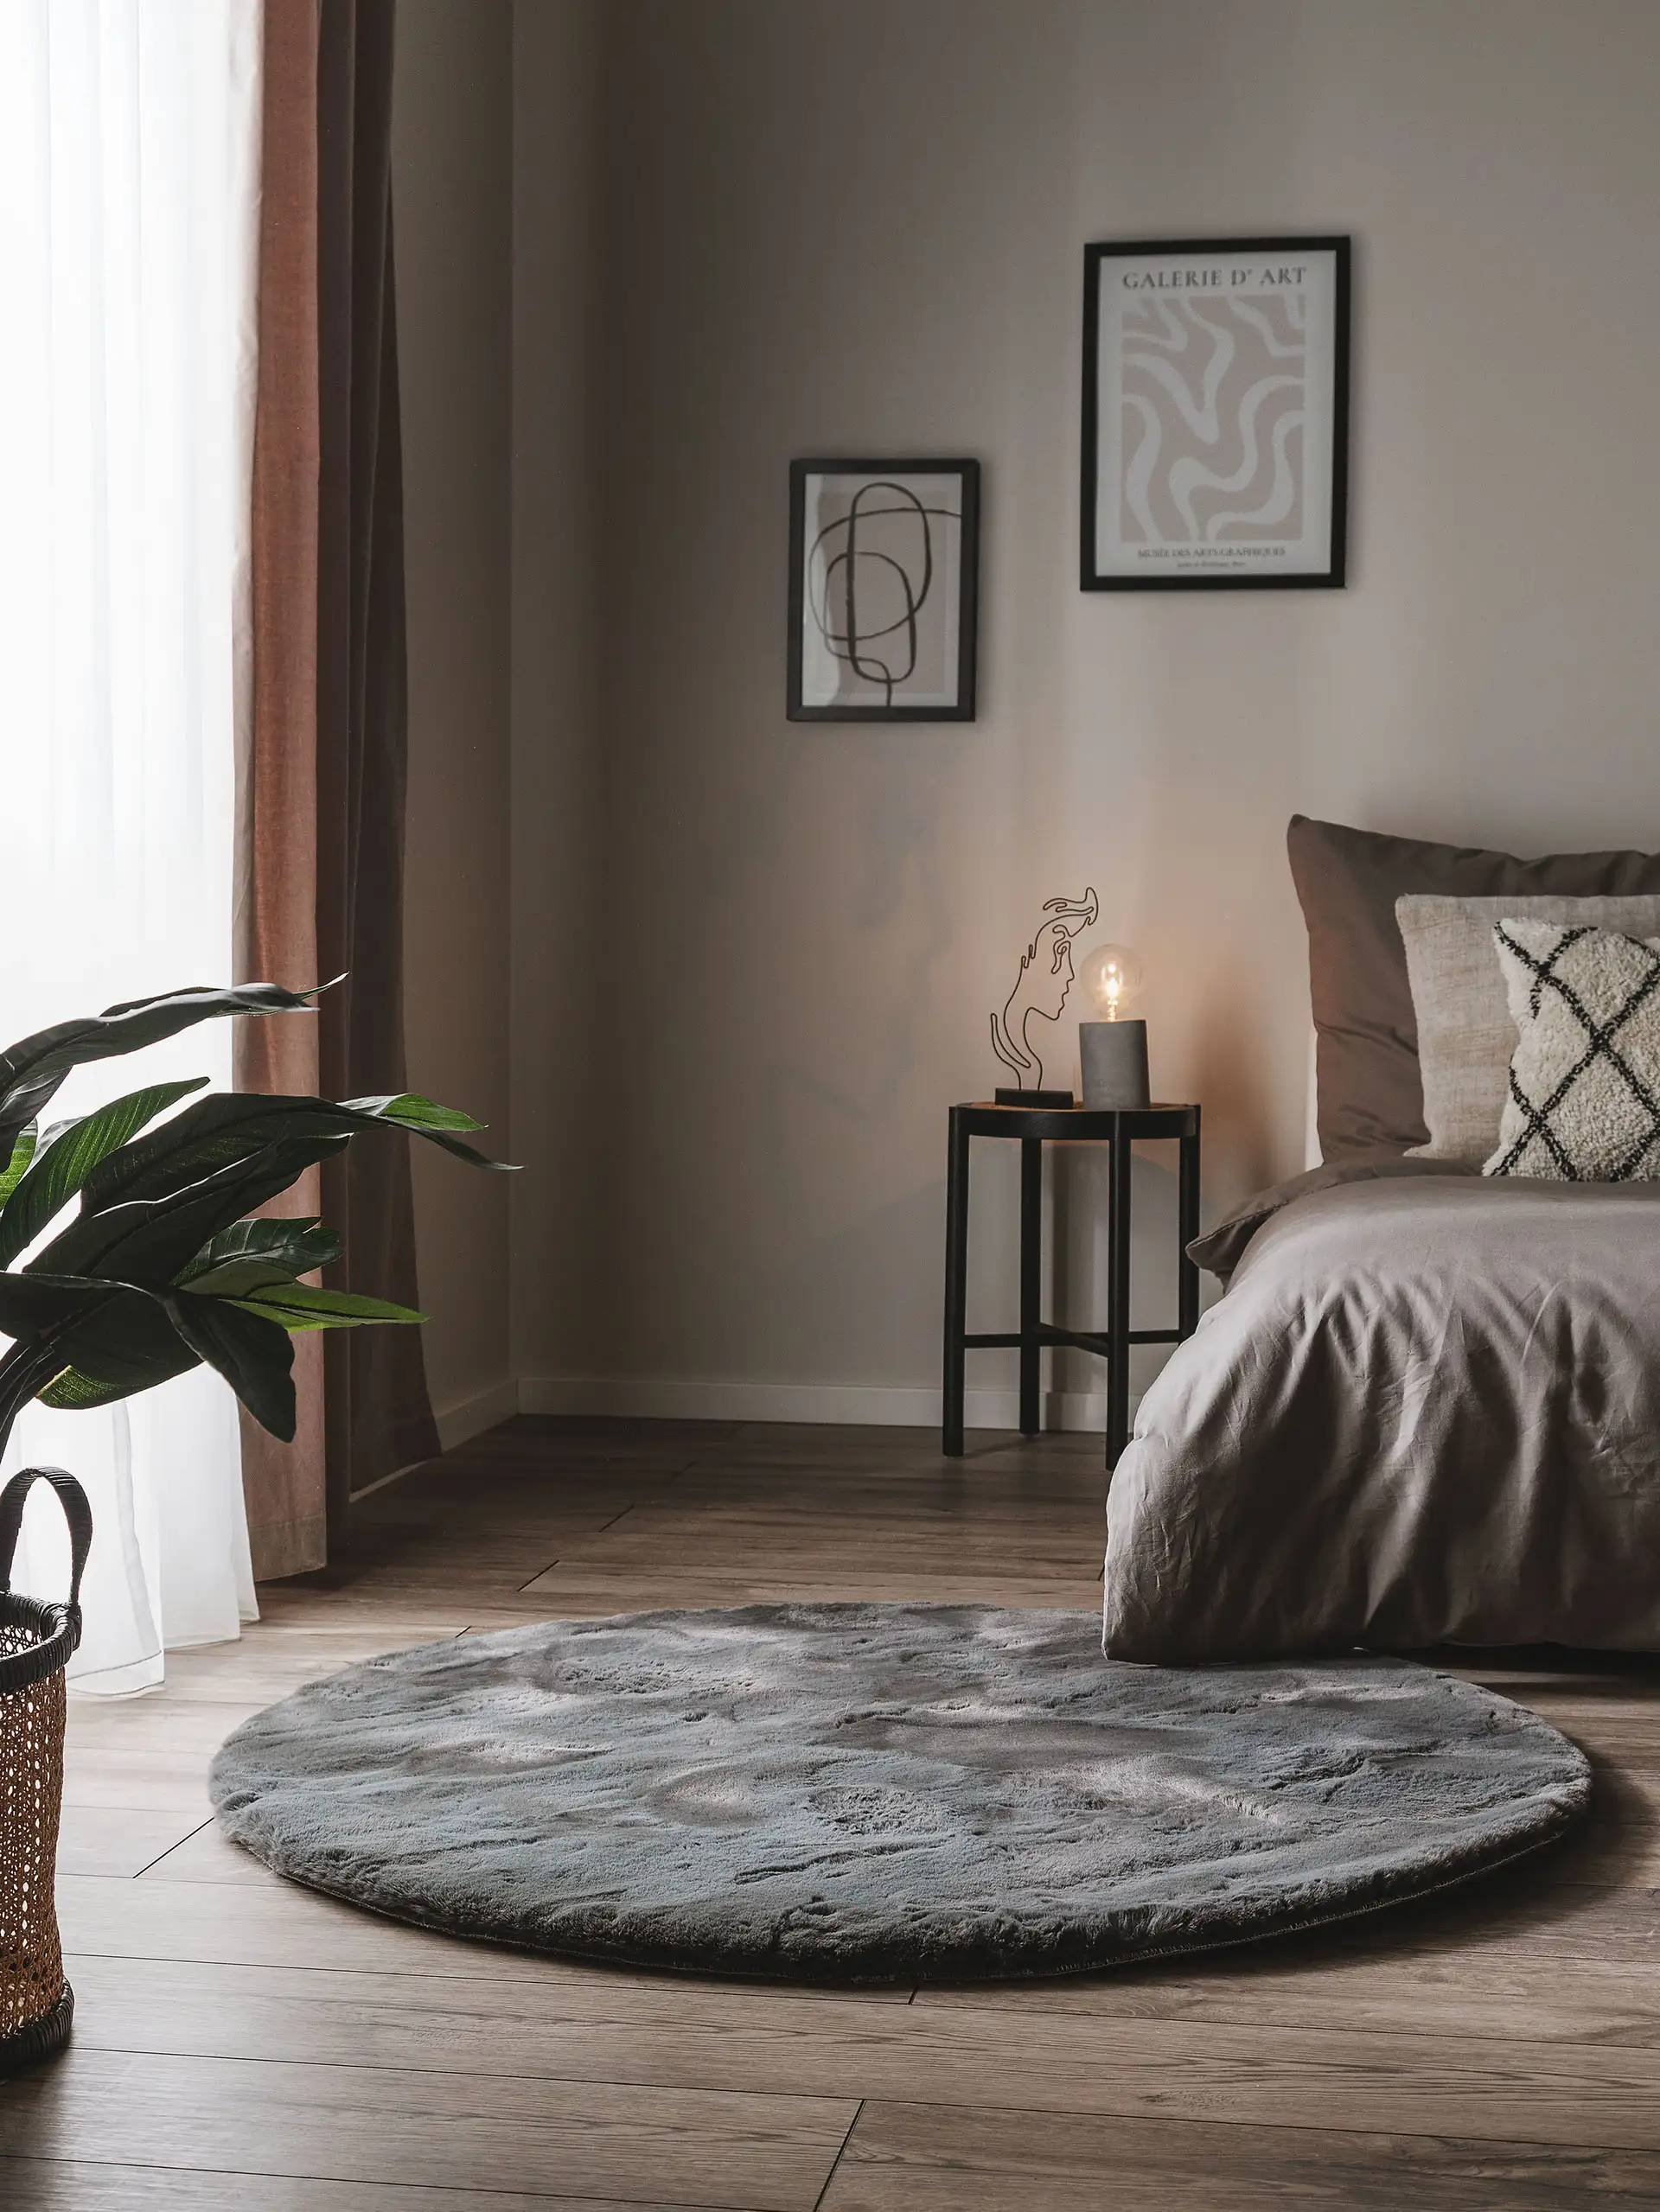 Dunkel eingerichtetes Schlafzimmer mit grauen Wänden, grauer Bettwäsche und einem dunkelgrauen, runden Teppich vor dem Bett